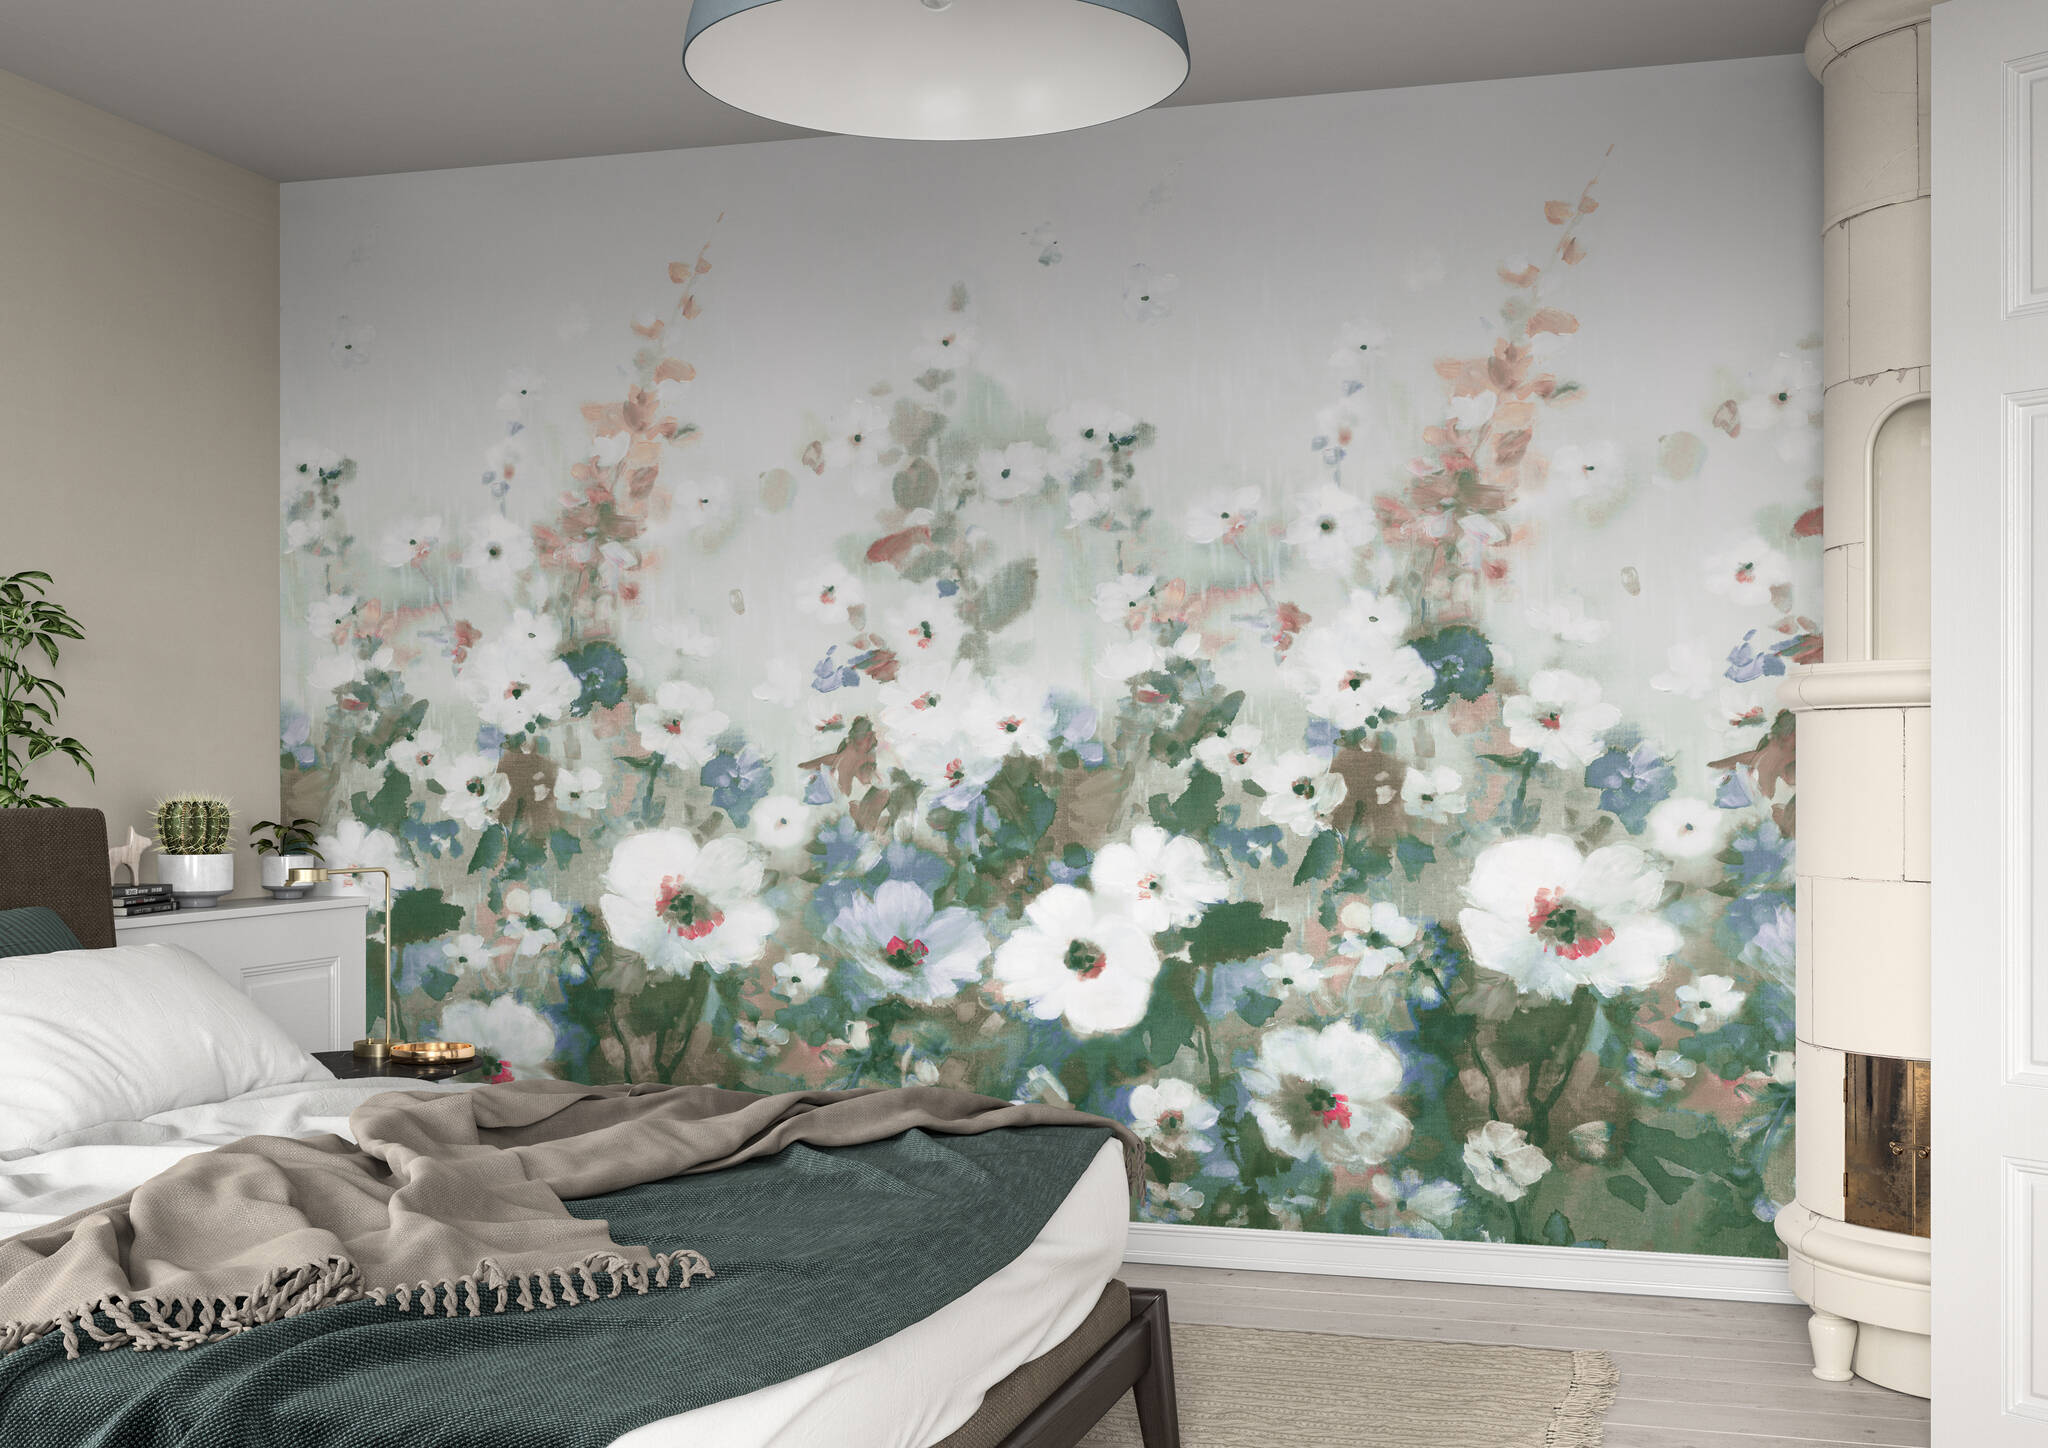 Schlafzimmer mit Wandbild - Sommerblumenwiese in zartem Grün und blauen Highlights